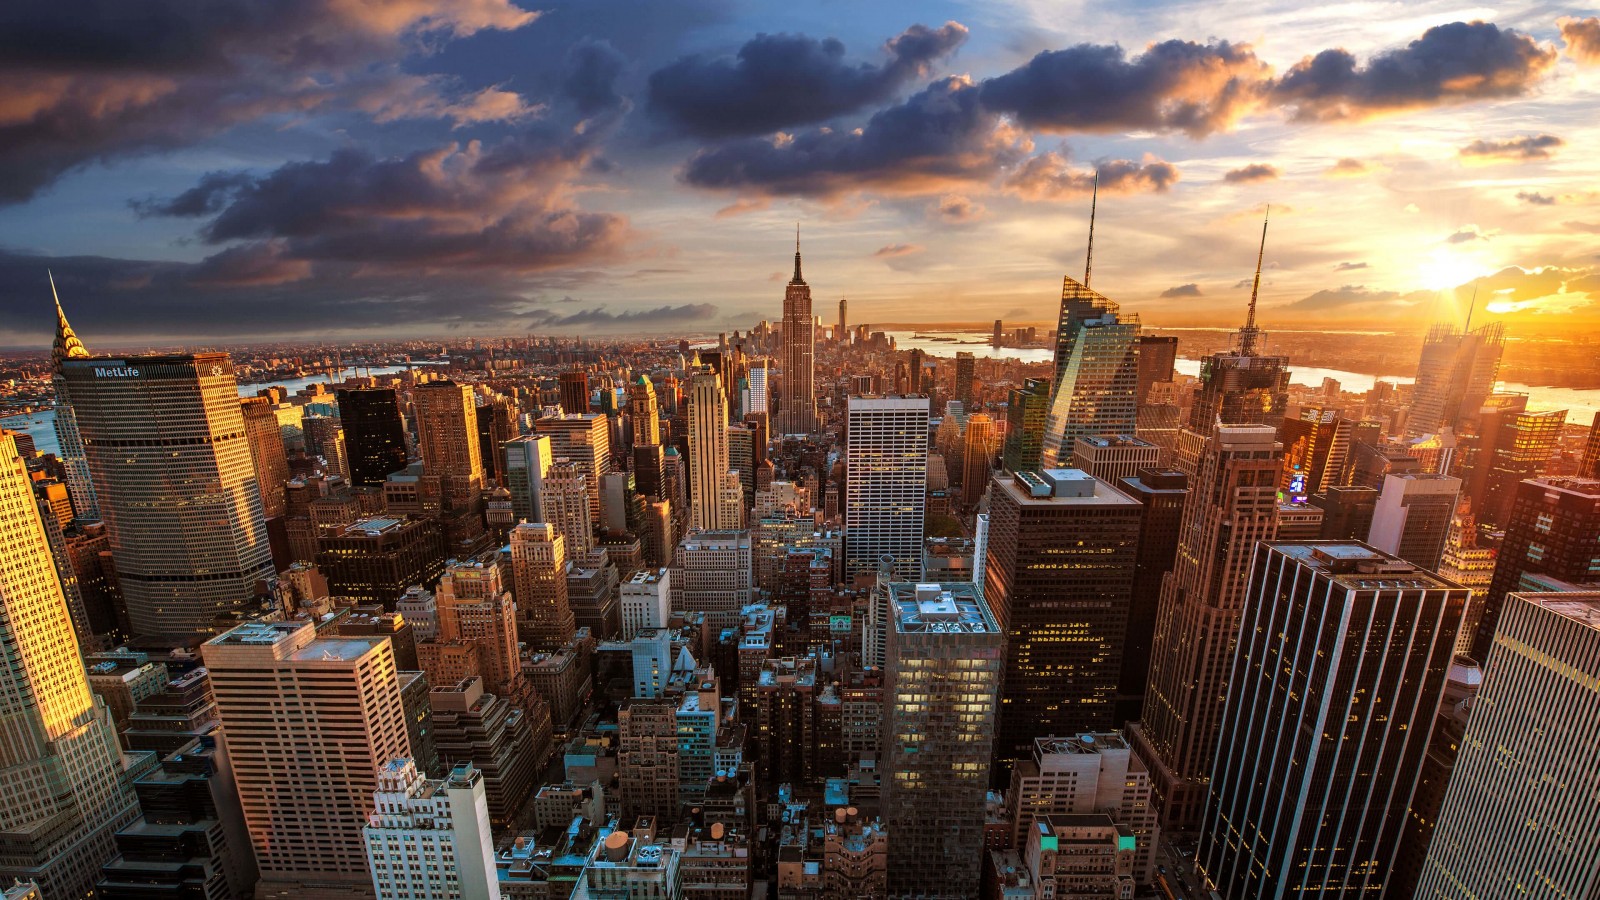 New York City Skyline At Sunset Wallpaper for Desktop 1600x900